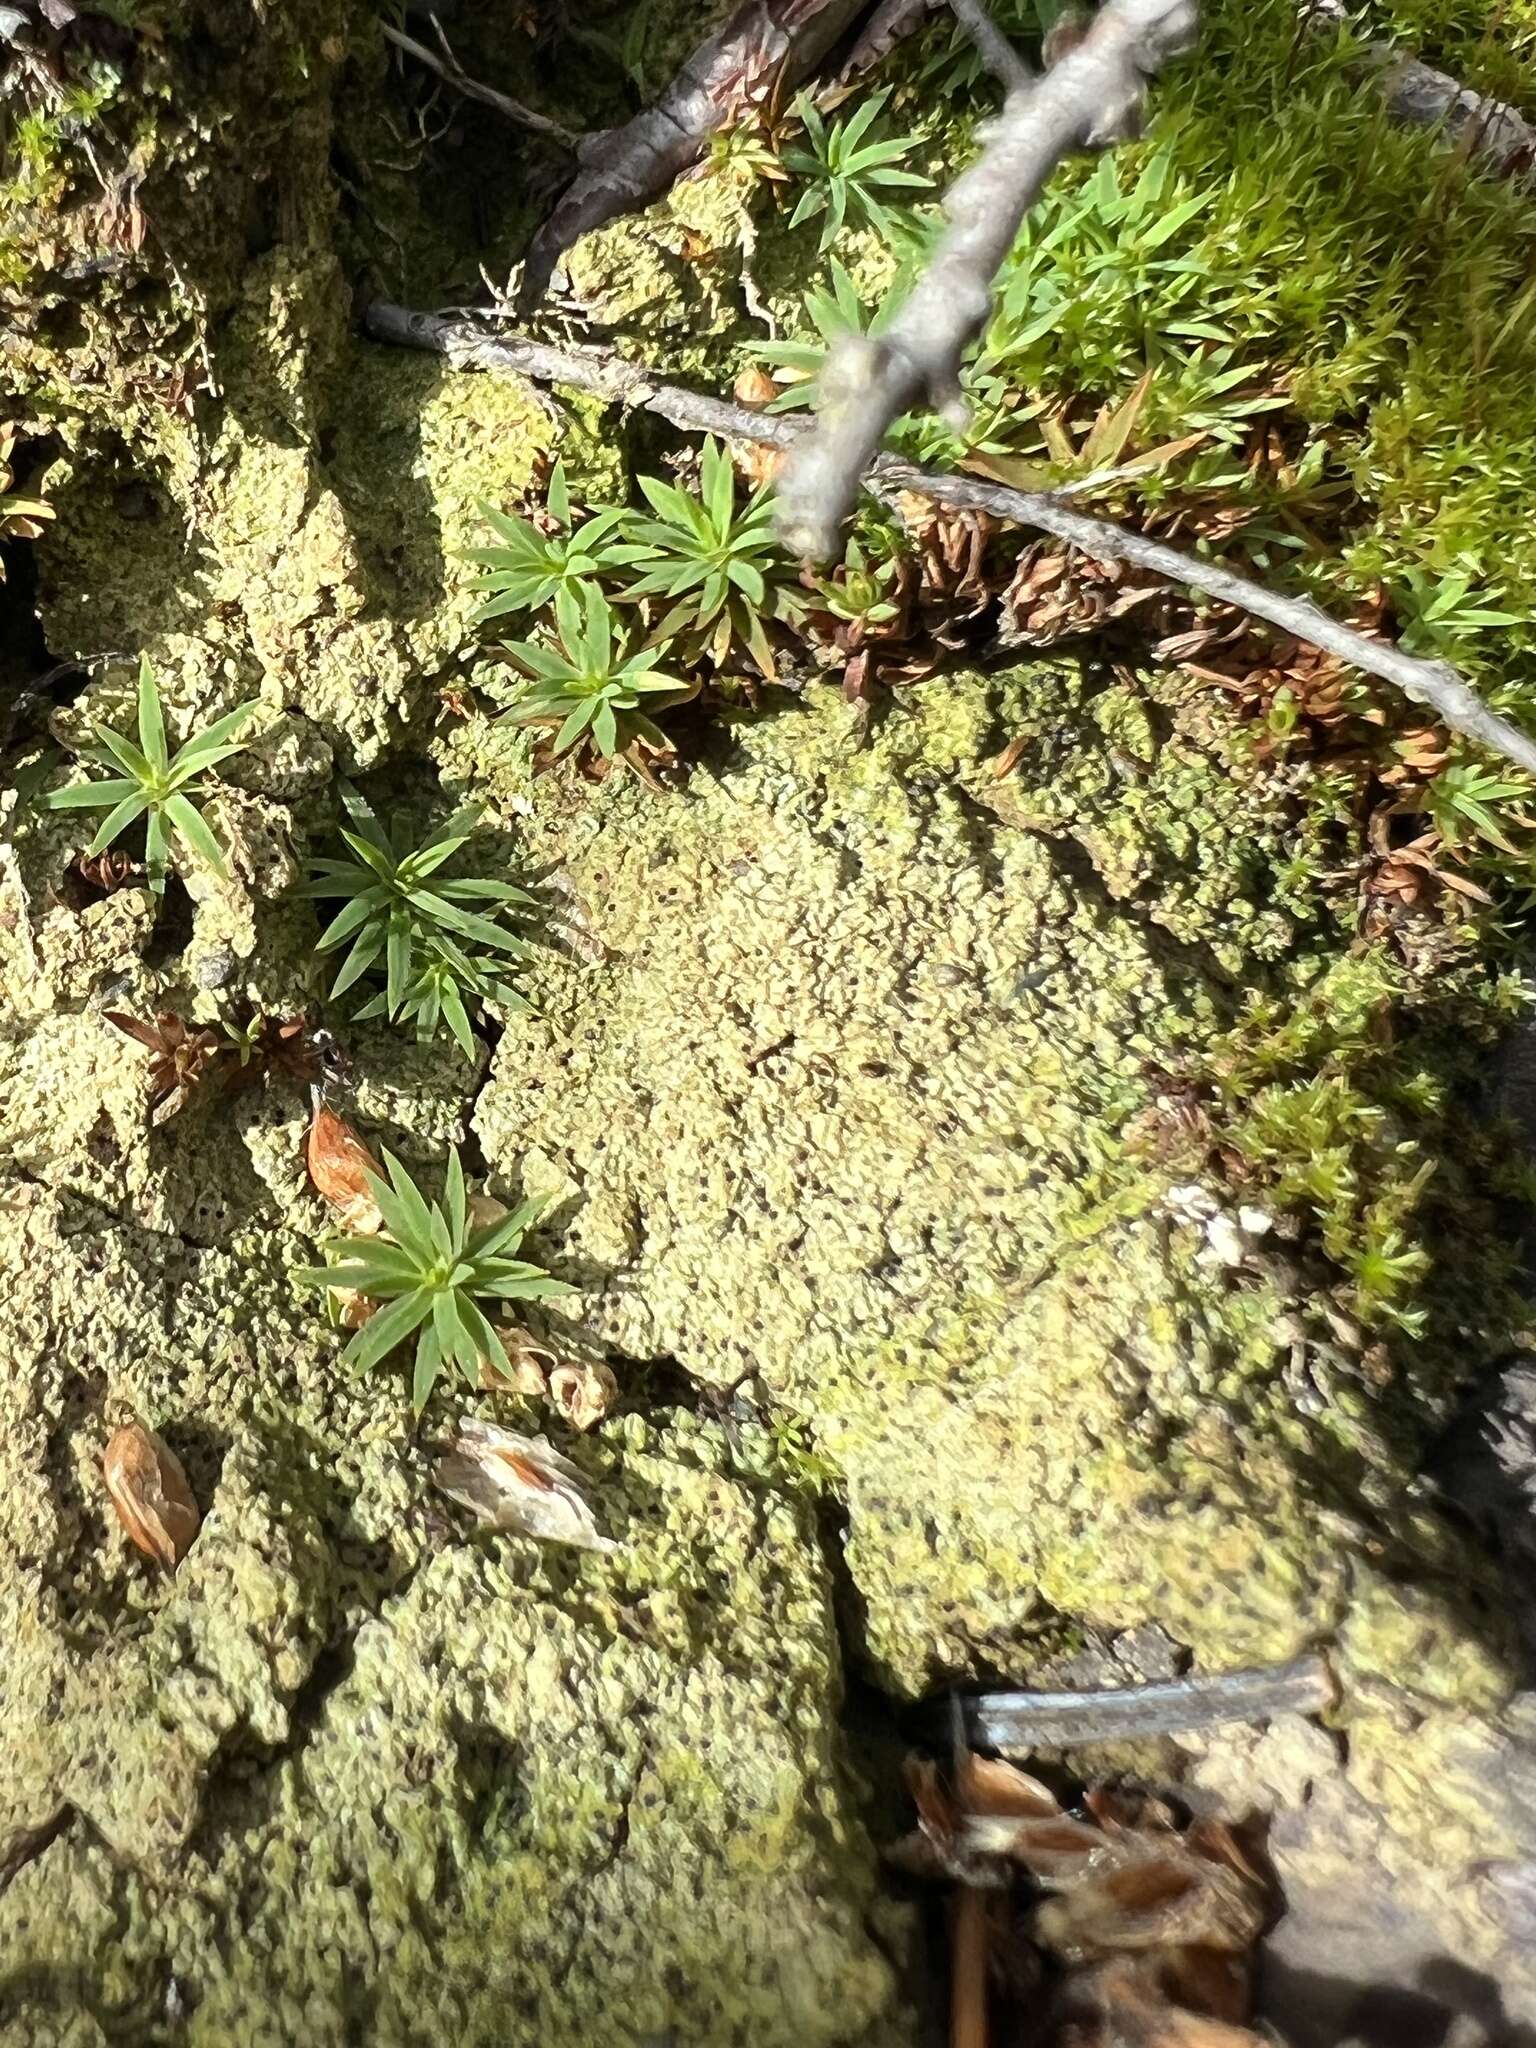 Image of thrombium lichen